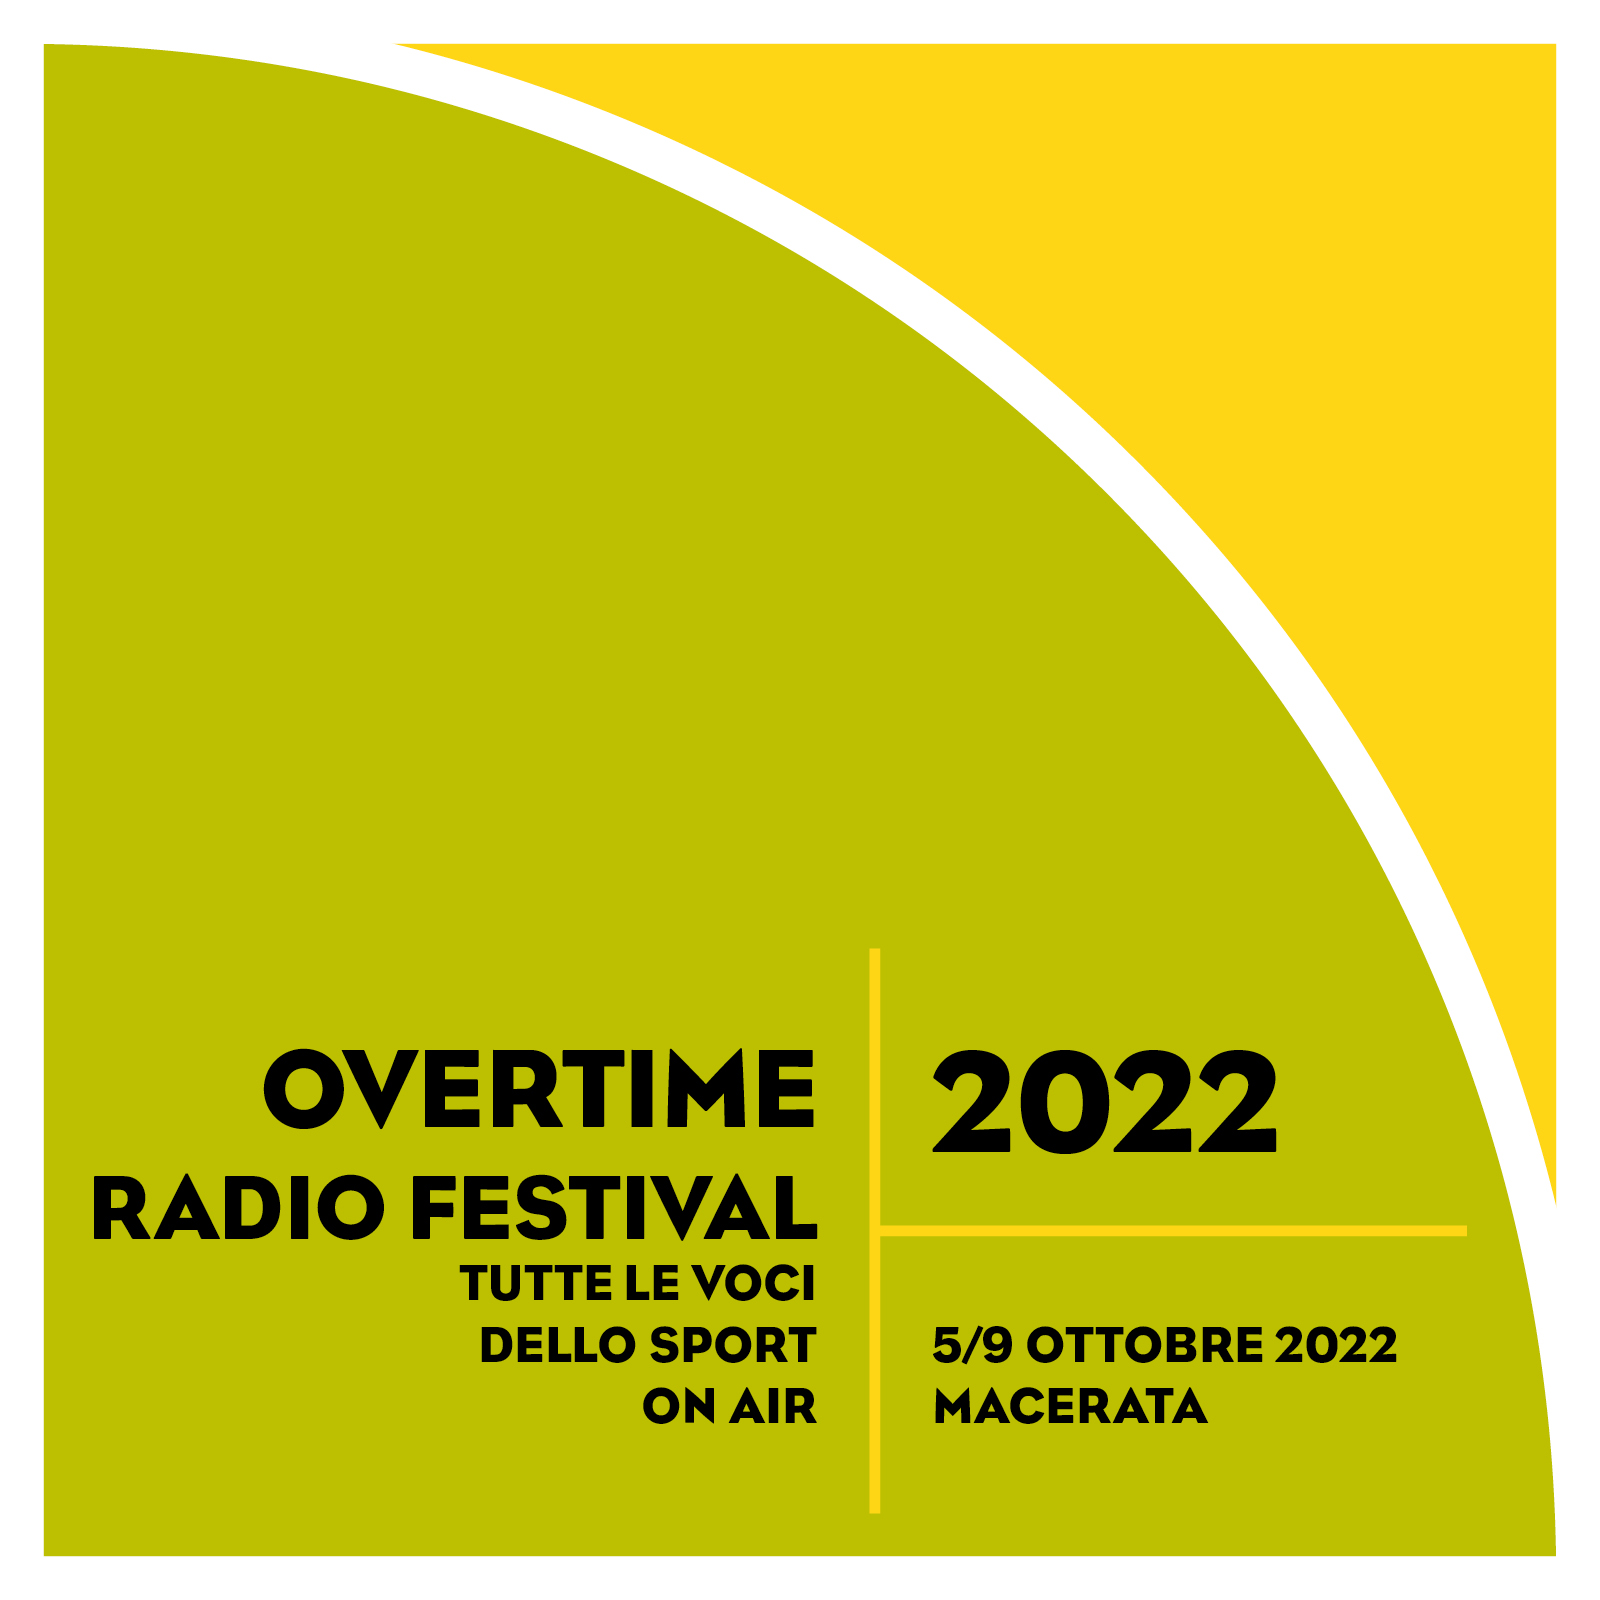 Overtime Radio Festival 2022